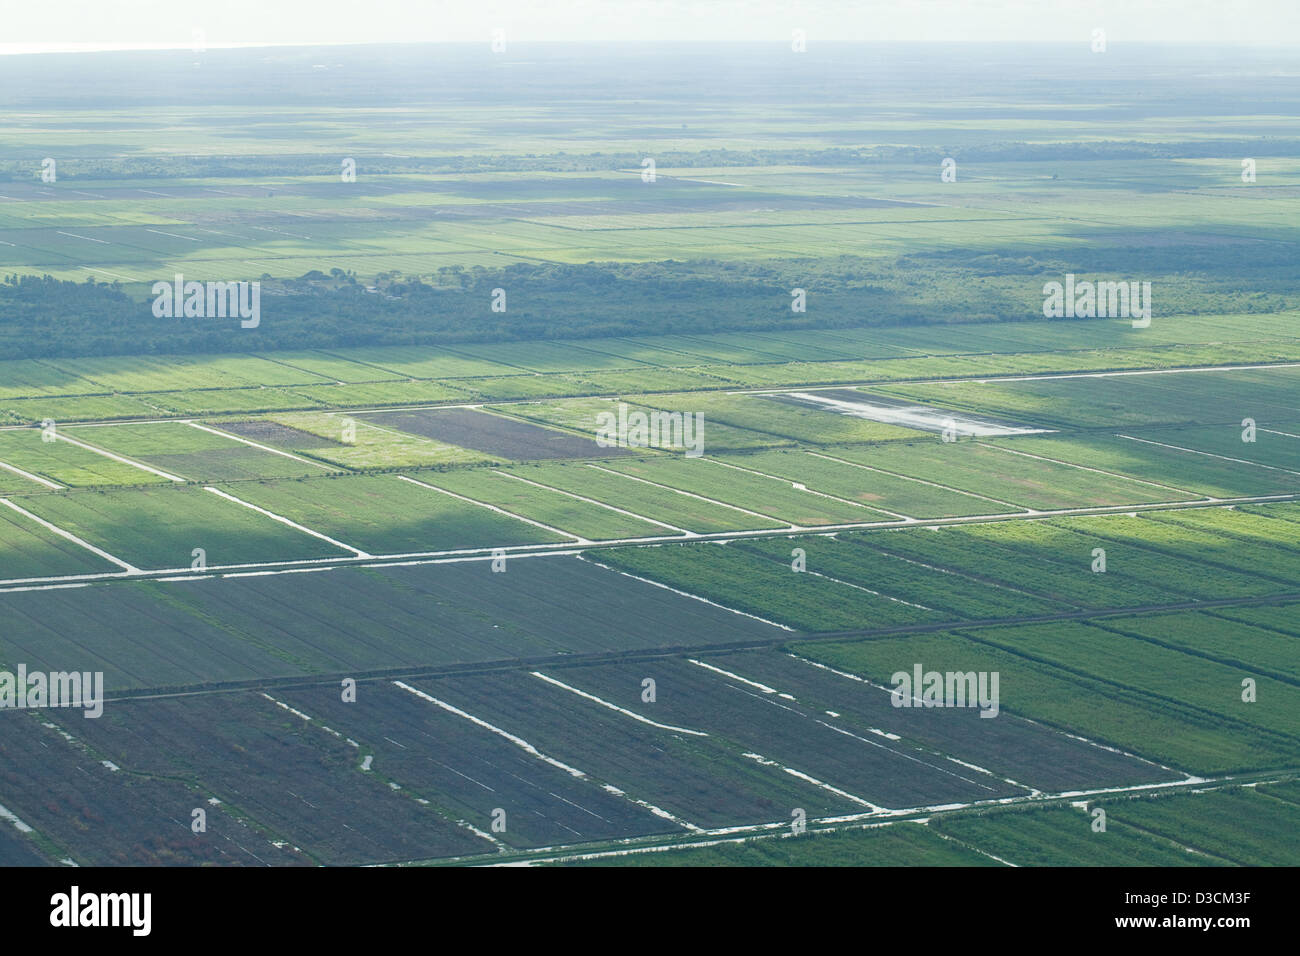 Les zones humides tropicales drainées pour l'agriculture. Arrière-pays de Georgetown, capitale du Guyana. L'Amérique du Sud. Photographie aérienne. Banque D'Images